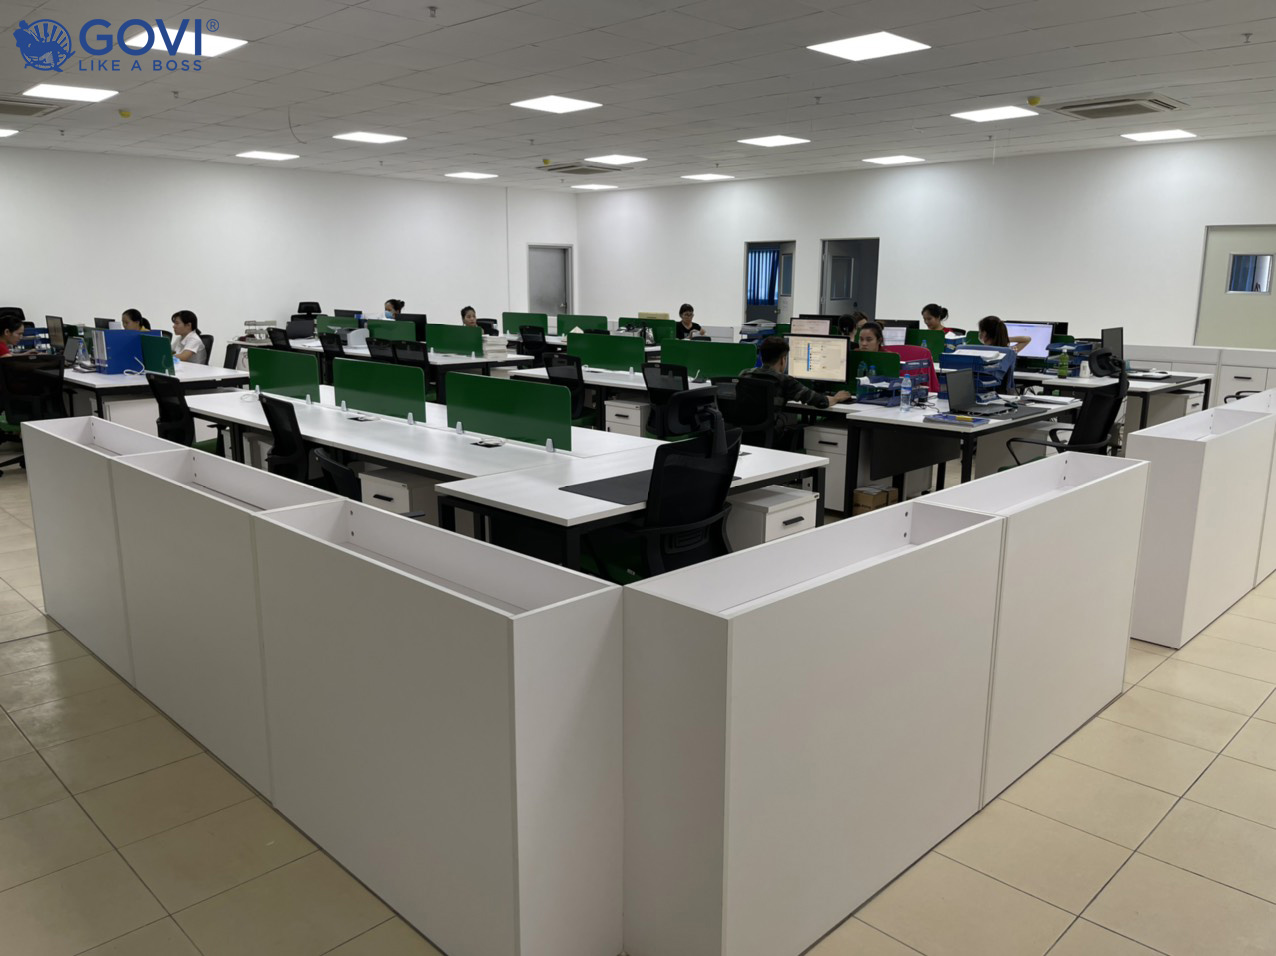 Govi cung cấp và lắp đặt toàn bộ nội thất văn phòng cho Thu Do JSC